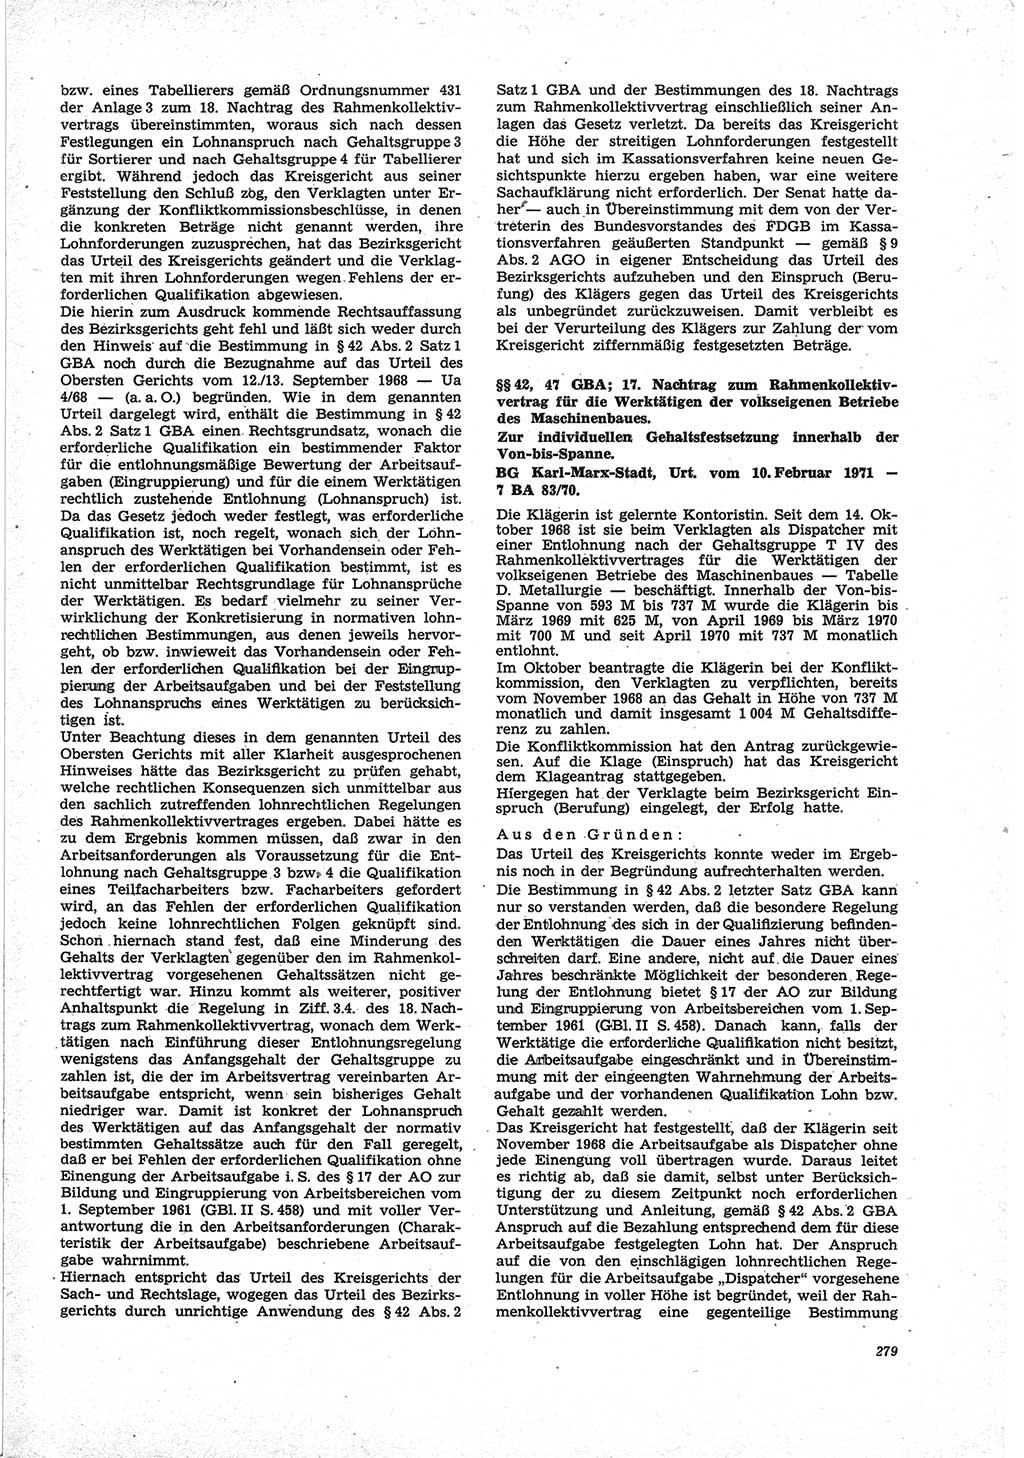 Neue Justiz (NJ), Zeitschrift für Recht und Rechtswissenschaft [Deutsche Demokratische Republik (DDR)], 25. Jahrgang 1971, Seite 279 (NJ DDR 1971, S. 279)